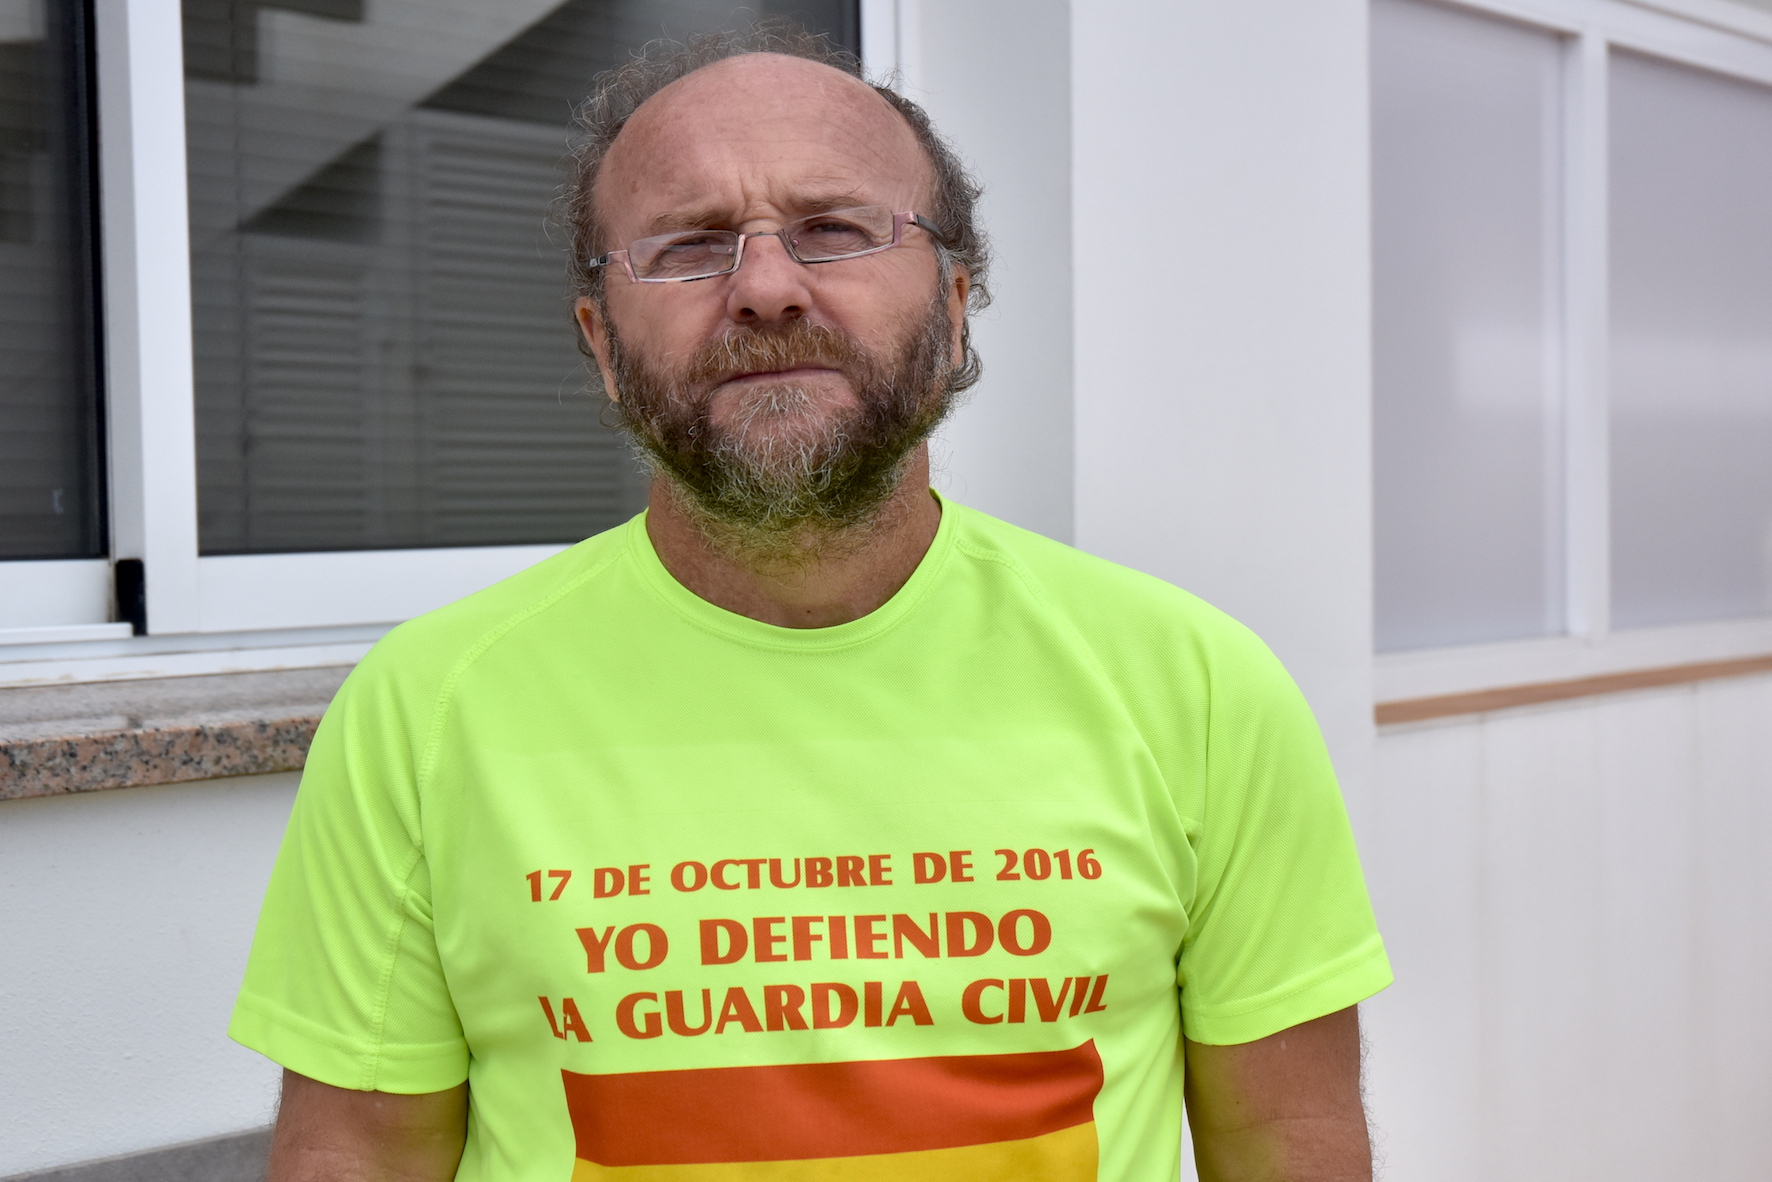 Según Fernando Gutiérrez “la caza submarina” no puede tener la consideración de pesca ya que se hace directamente con un arma y como tal debe ser tratada